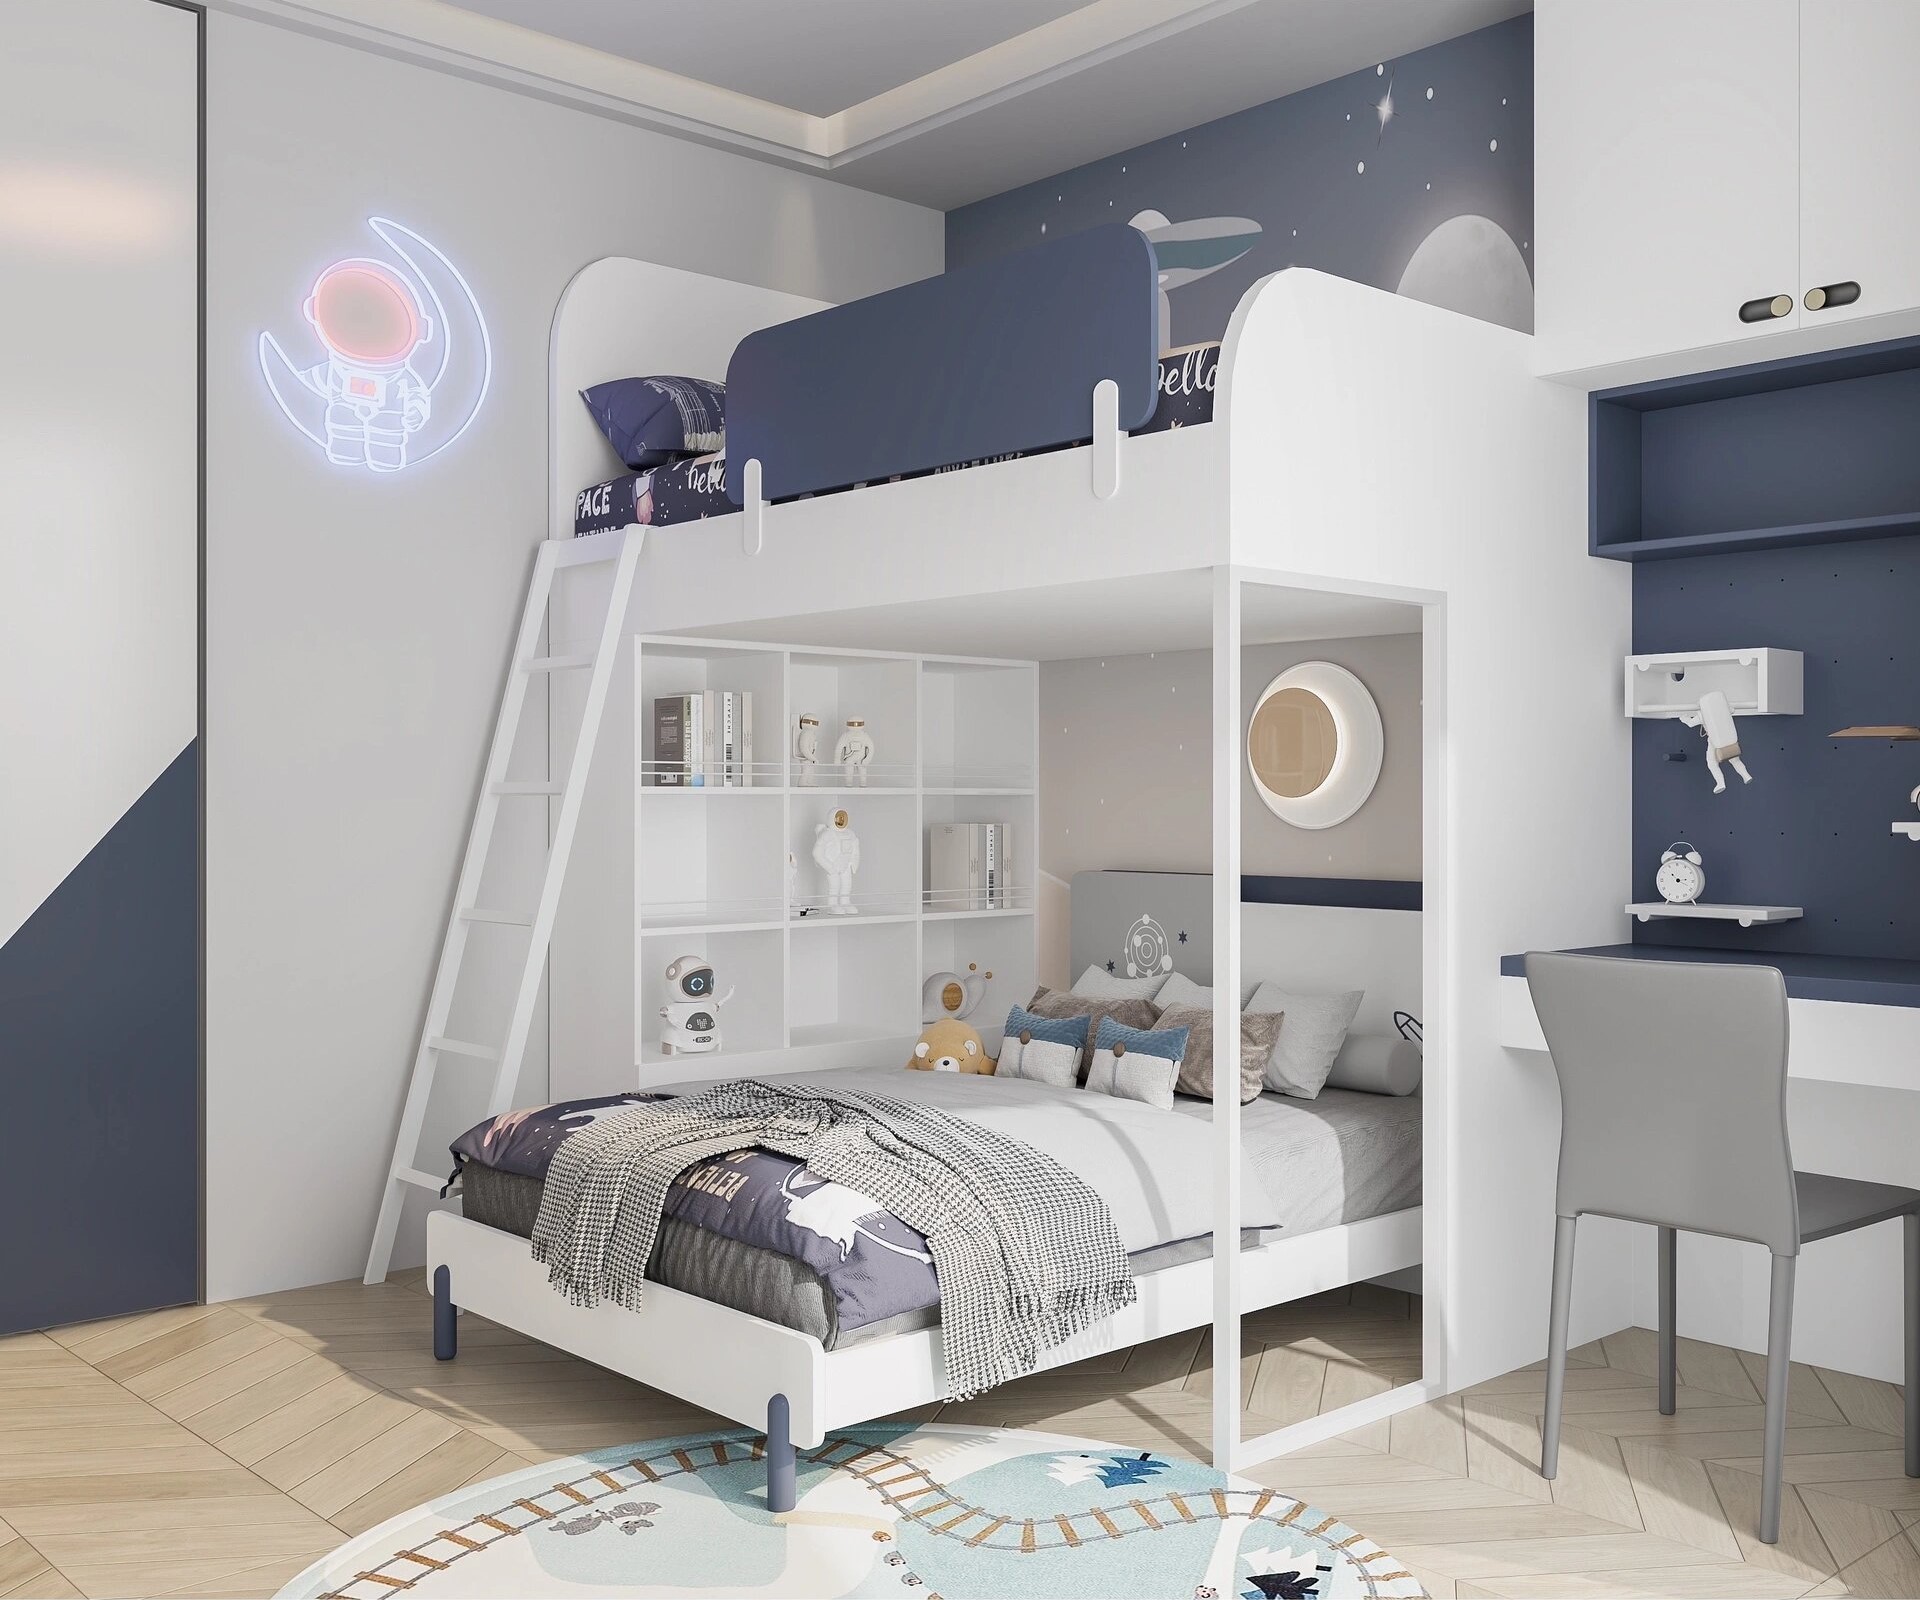 Giường Kết Hợp Tủ Cho Bé - Giải Pháp Đa Năng Cho Phòng Ngủ Trẻ Em